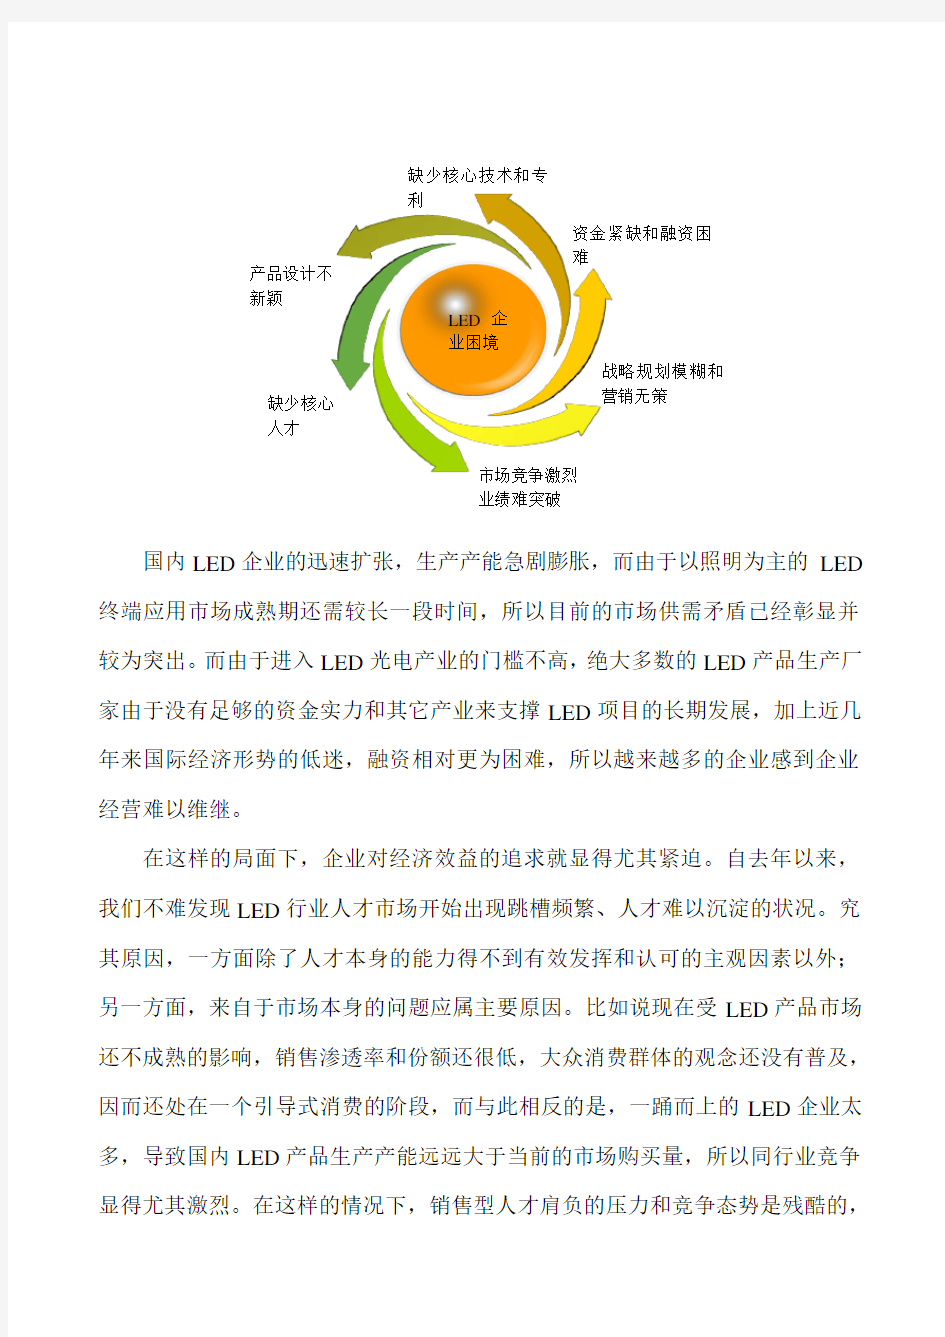 中国LED光电行业人才状况分析报告